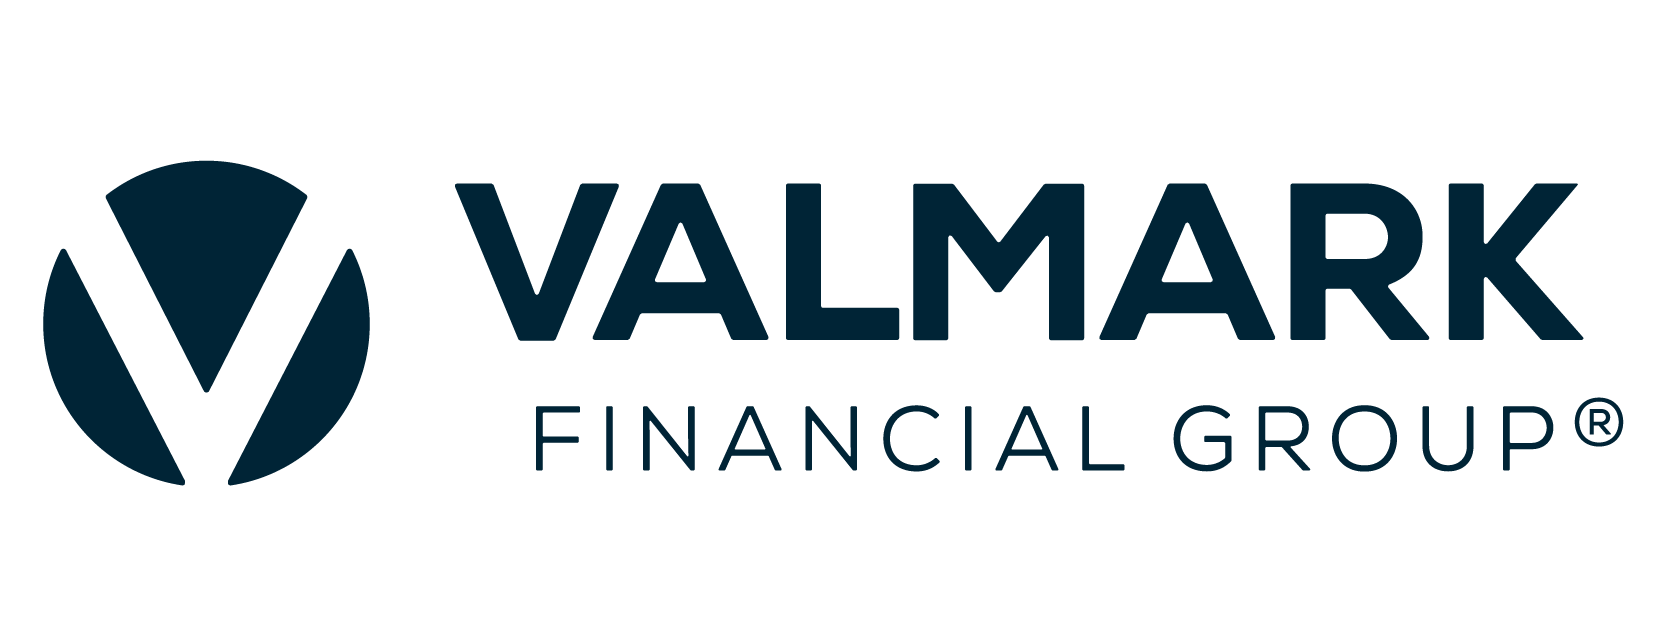 Valmark Financial Group Company Logo